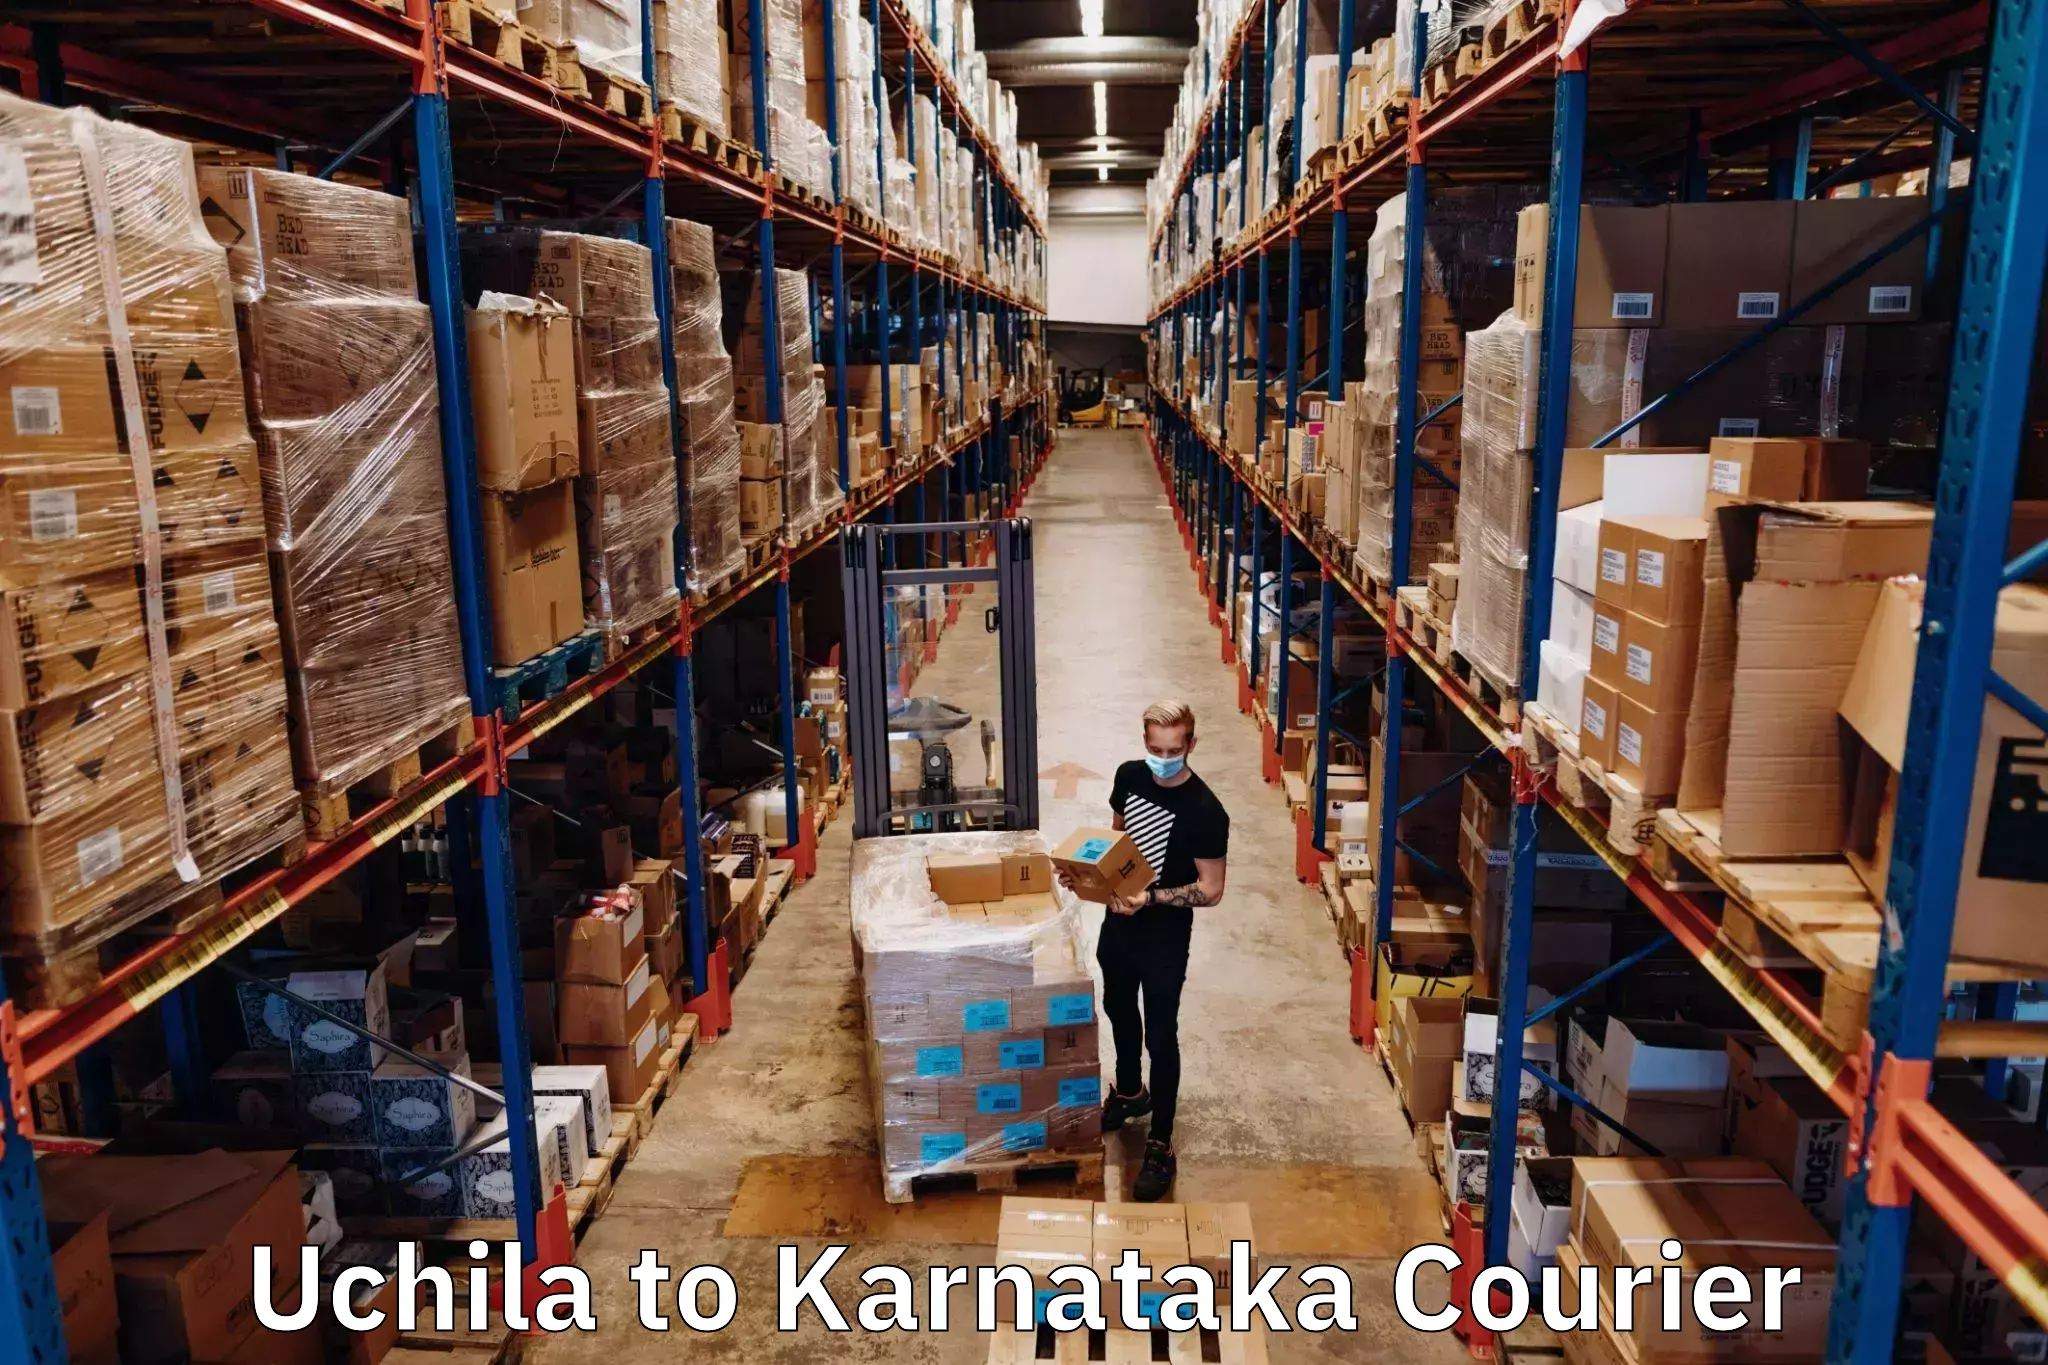 Global logistics network Uchila to Yenepoya Mangalore